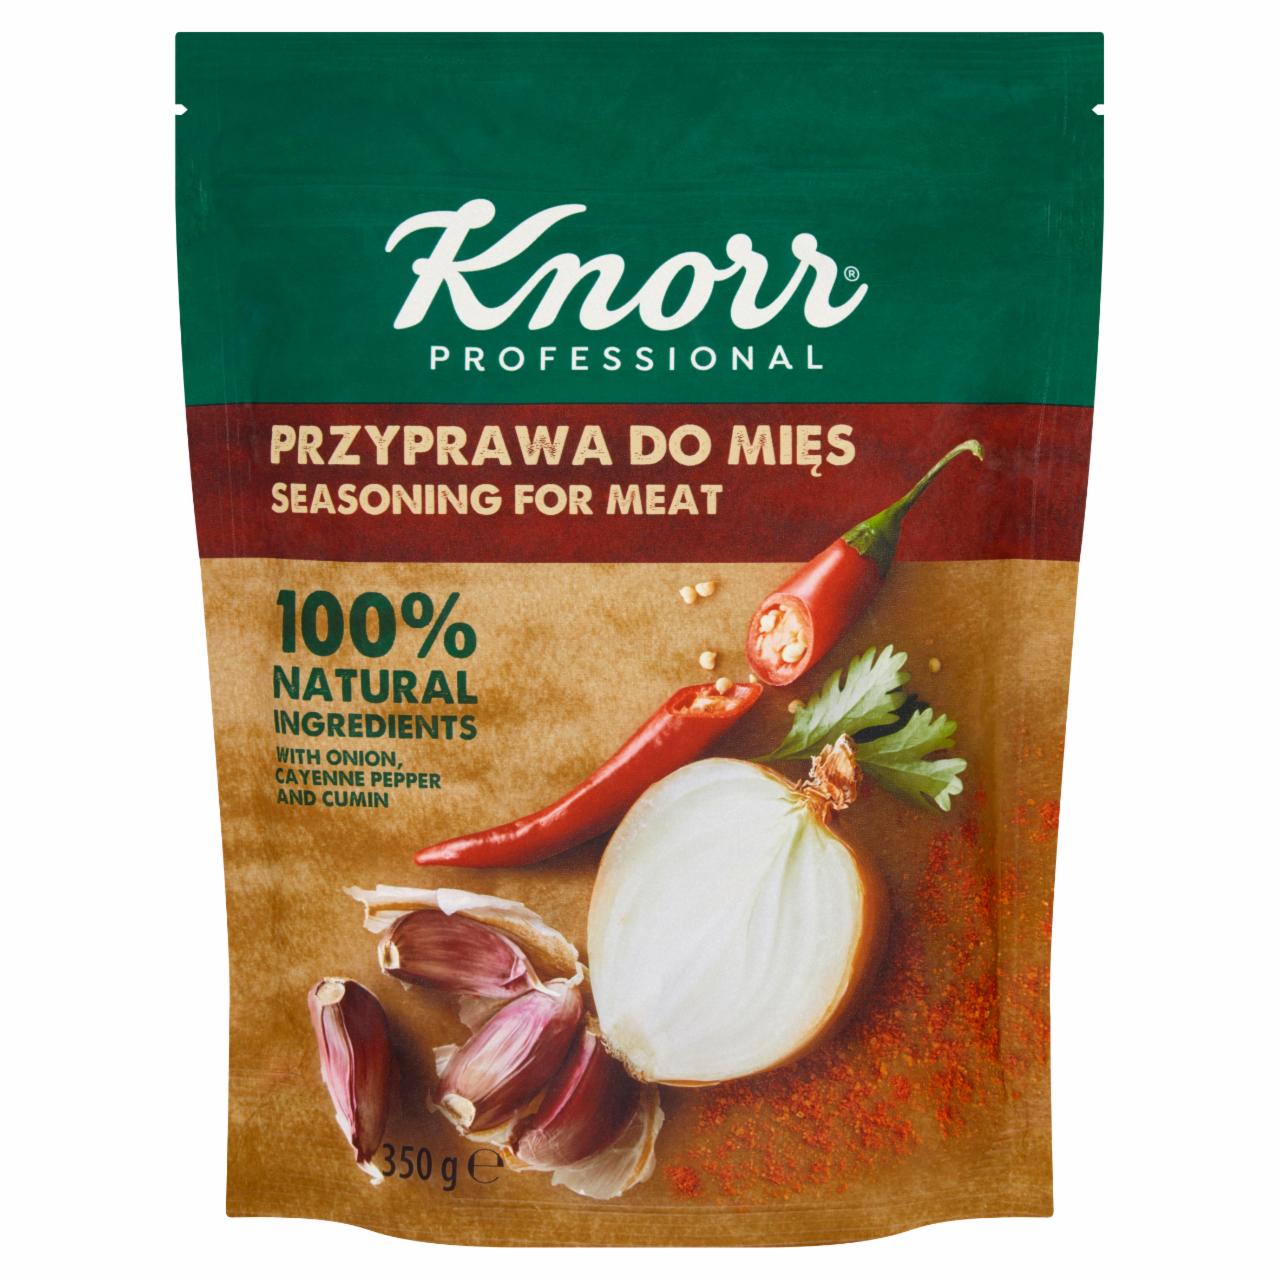 Zdjęcia - Knorr Professional Przyprawa do mięs 350 g